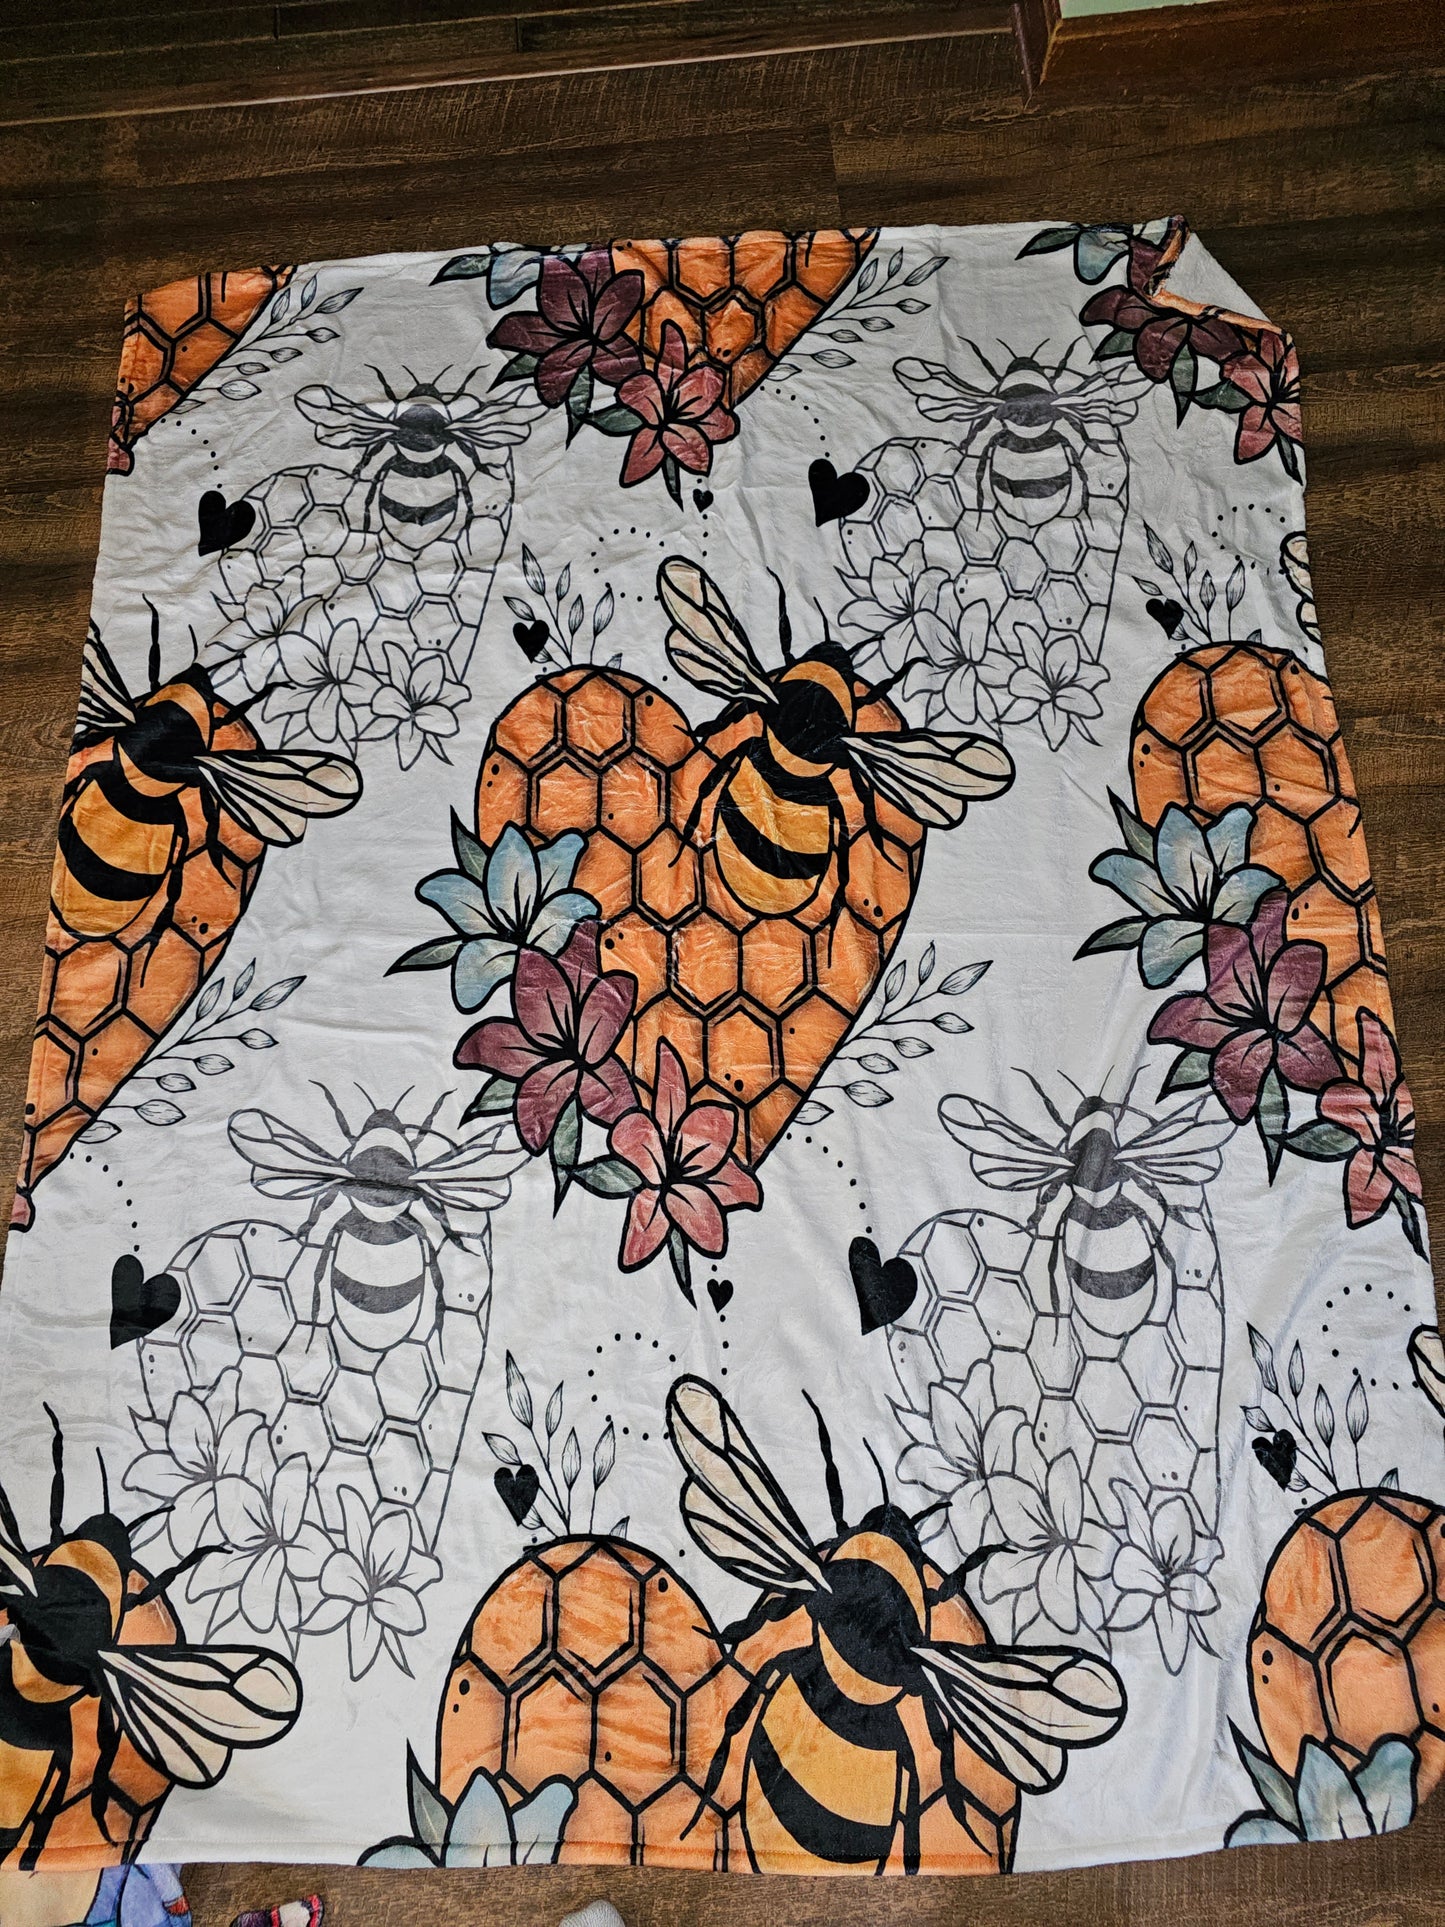 Bee theme blanket